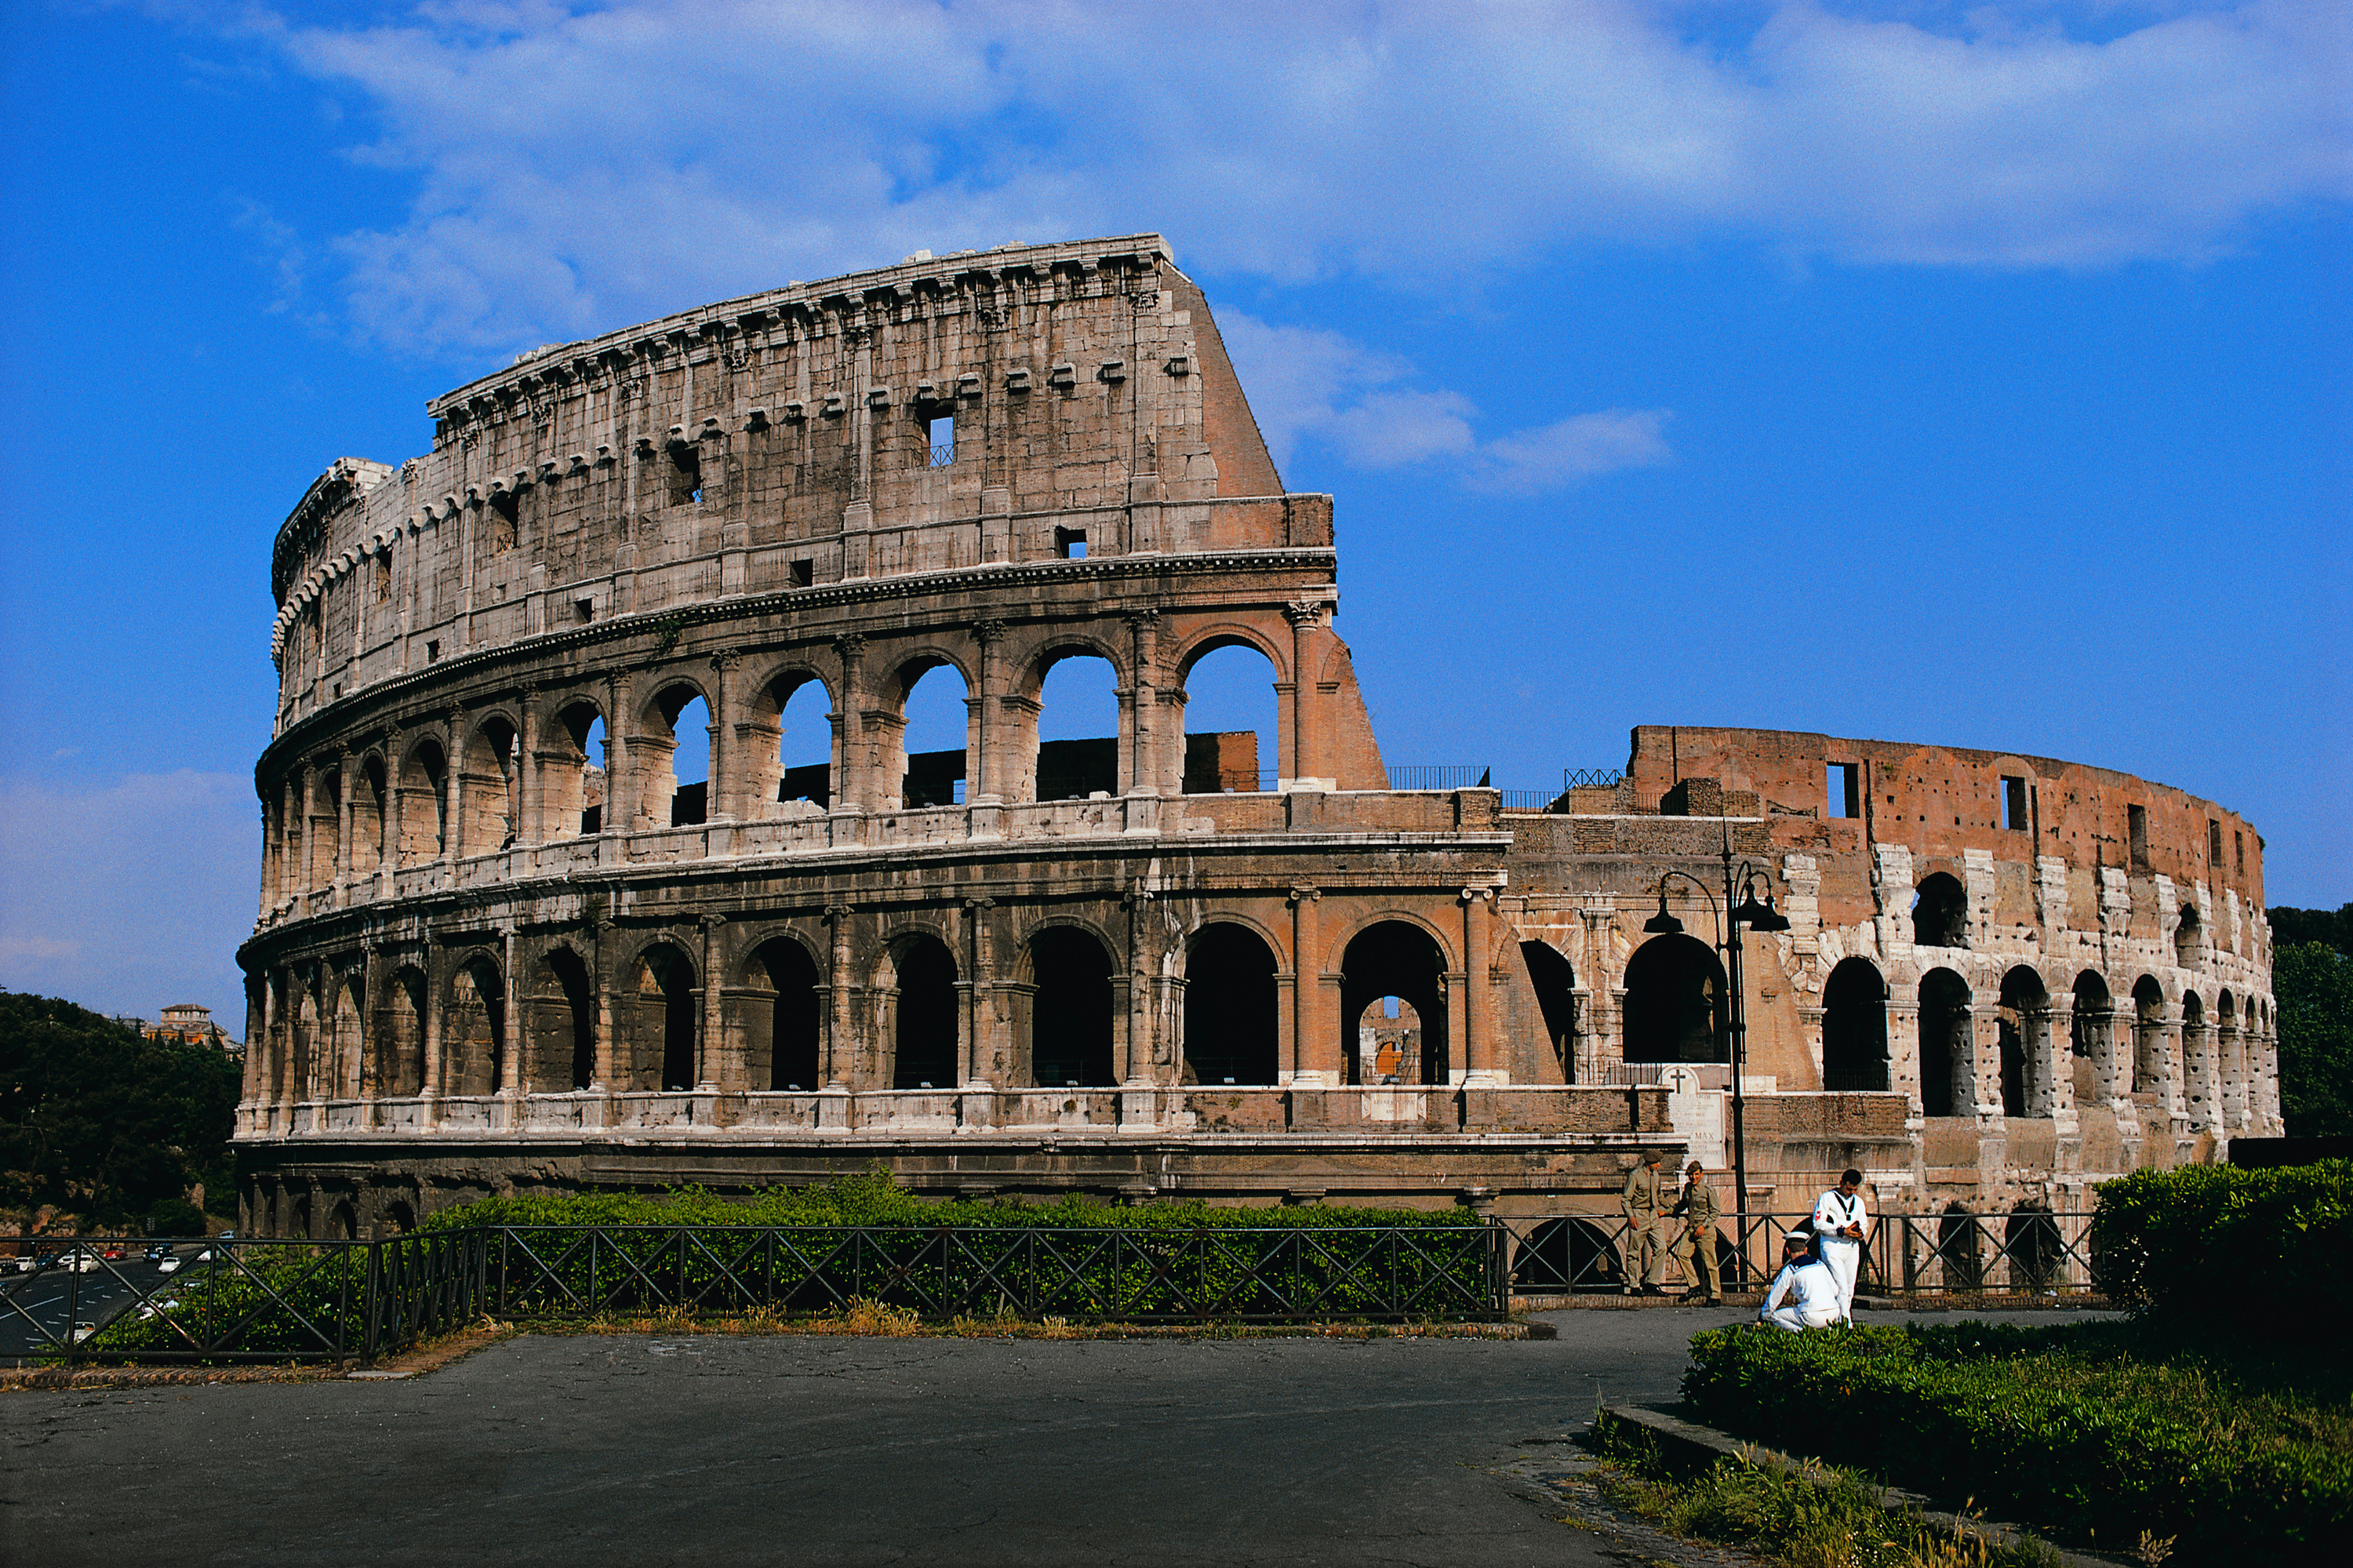 Рим, Италия, Колизей - обои на рабочий стол